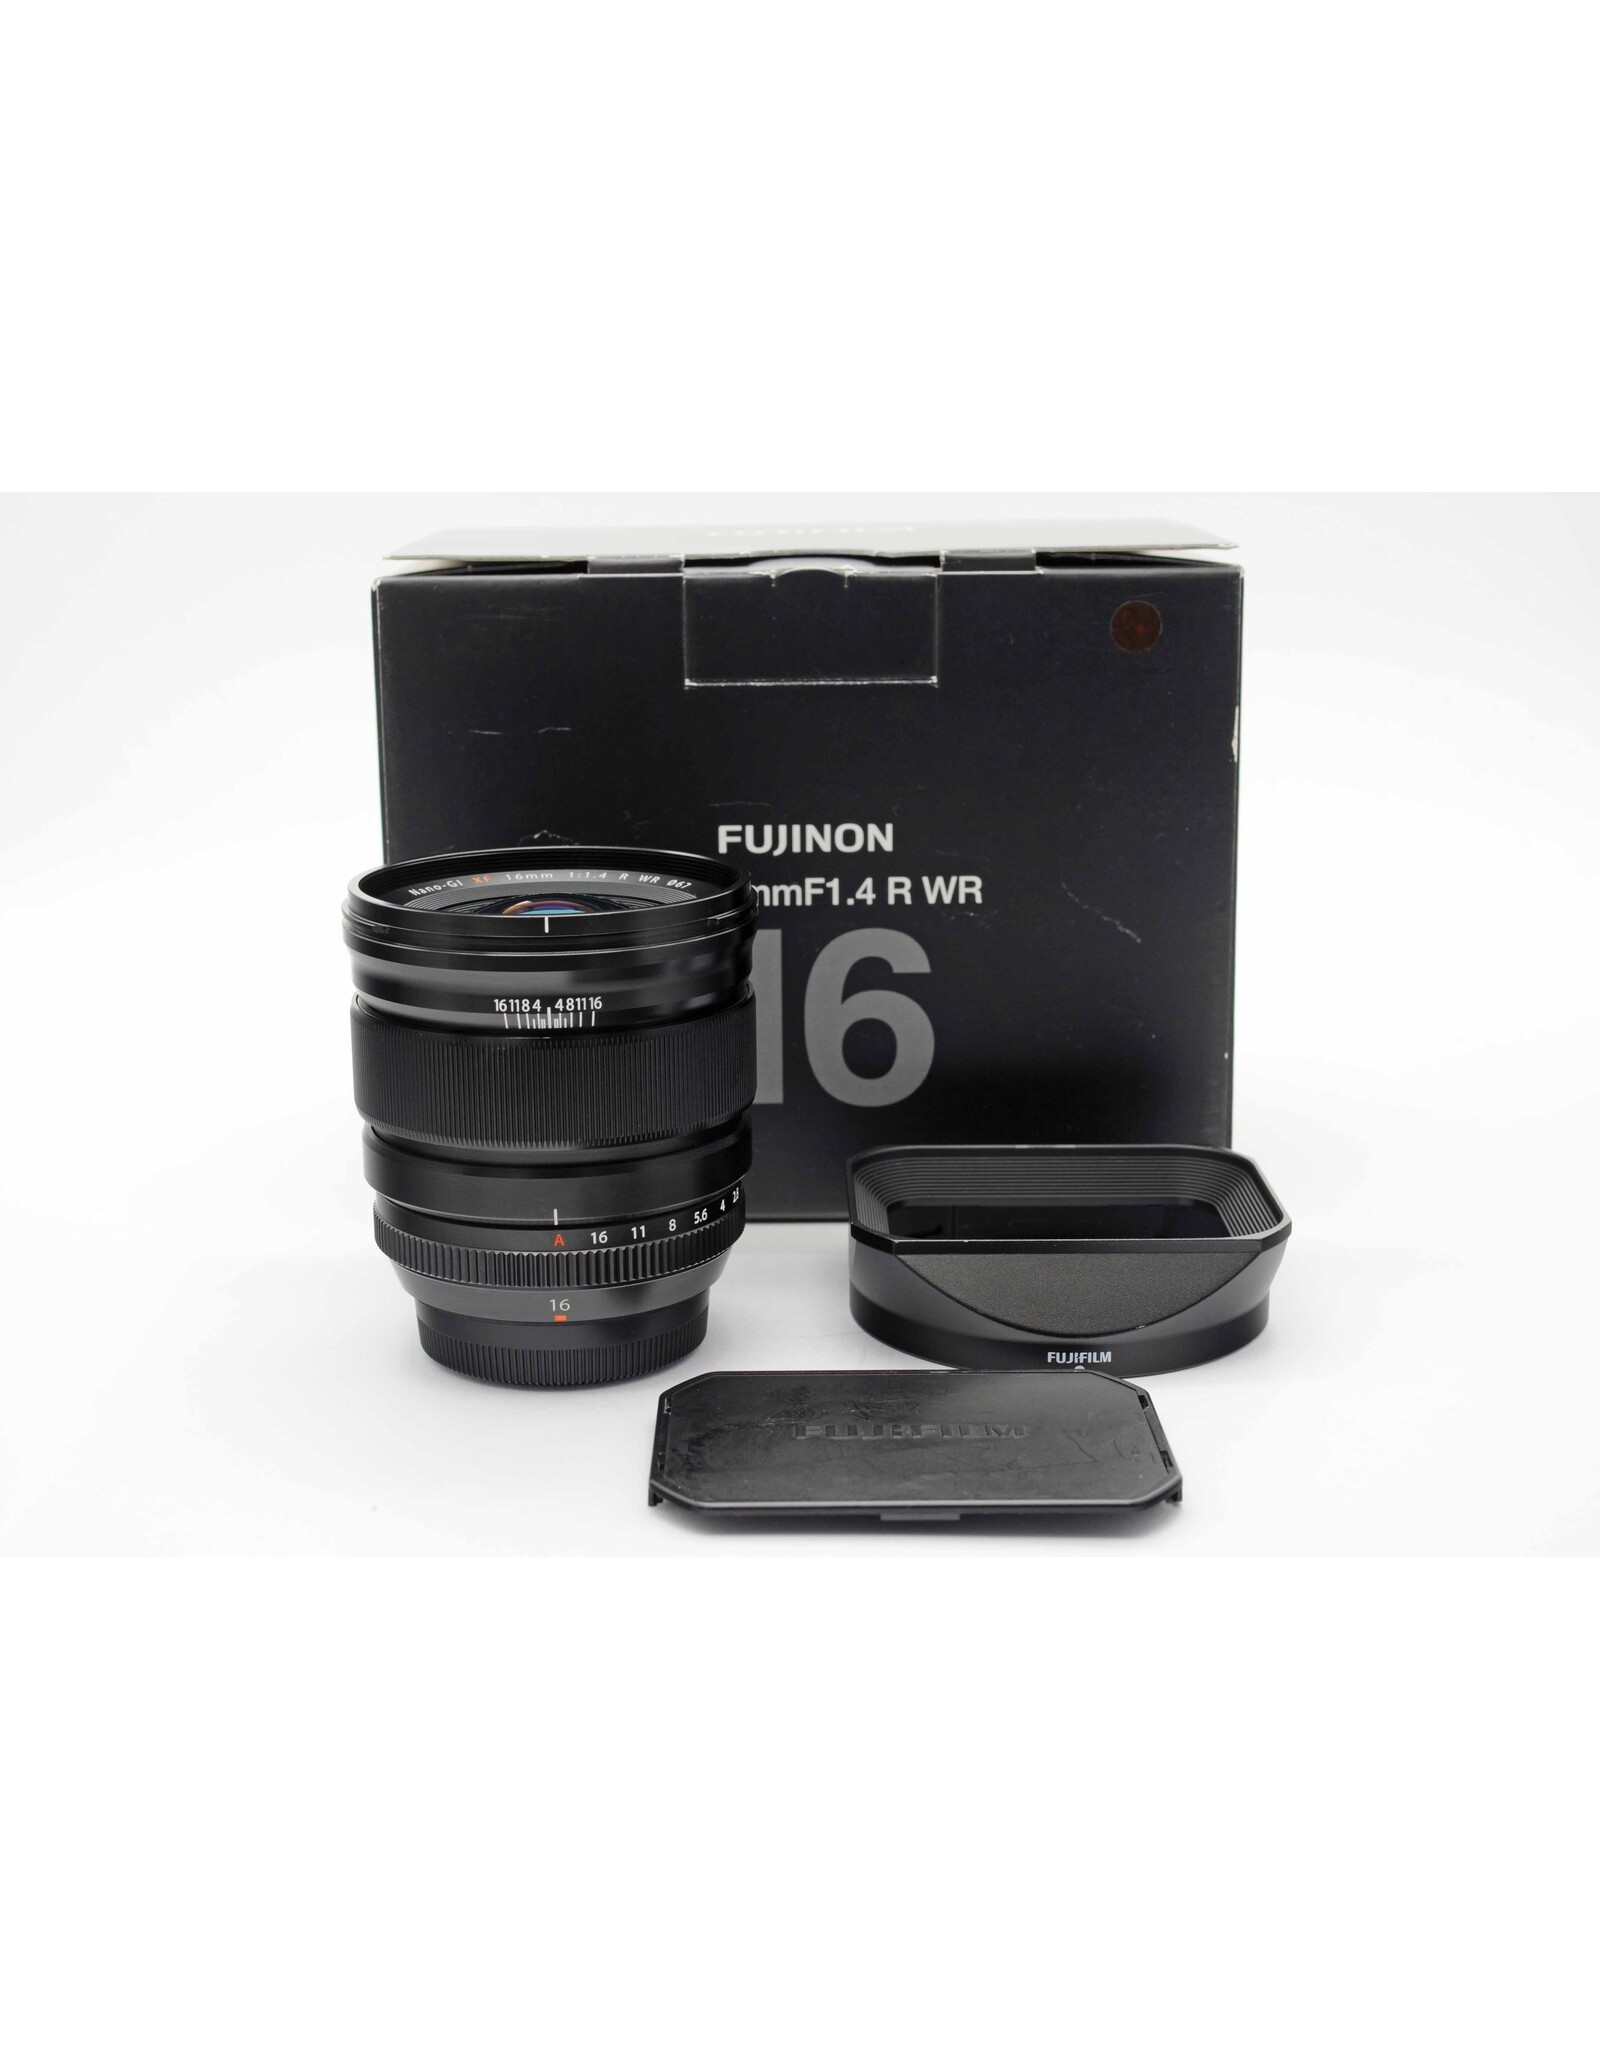 FUJIFILM 16mm F1.4 WR レンズカバー+SD16G付き